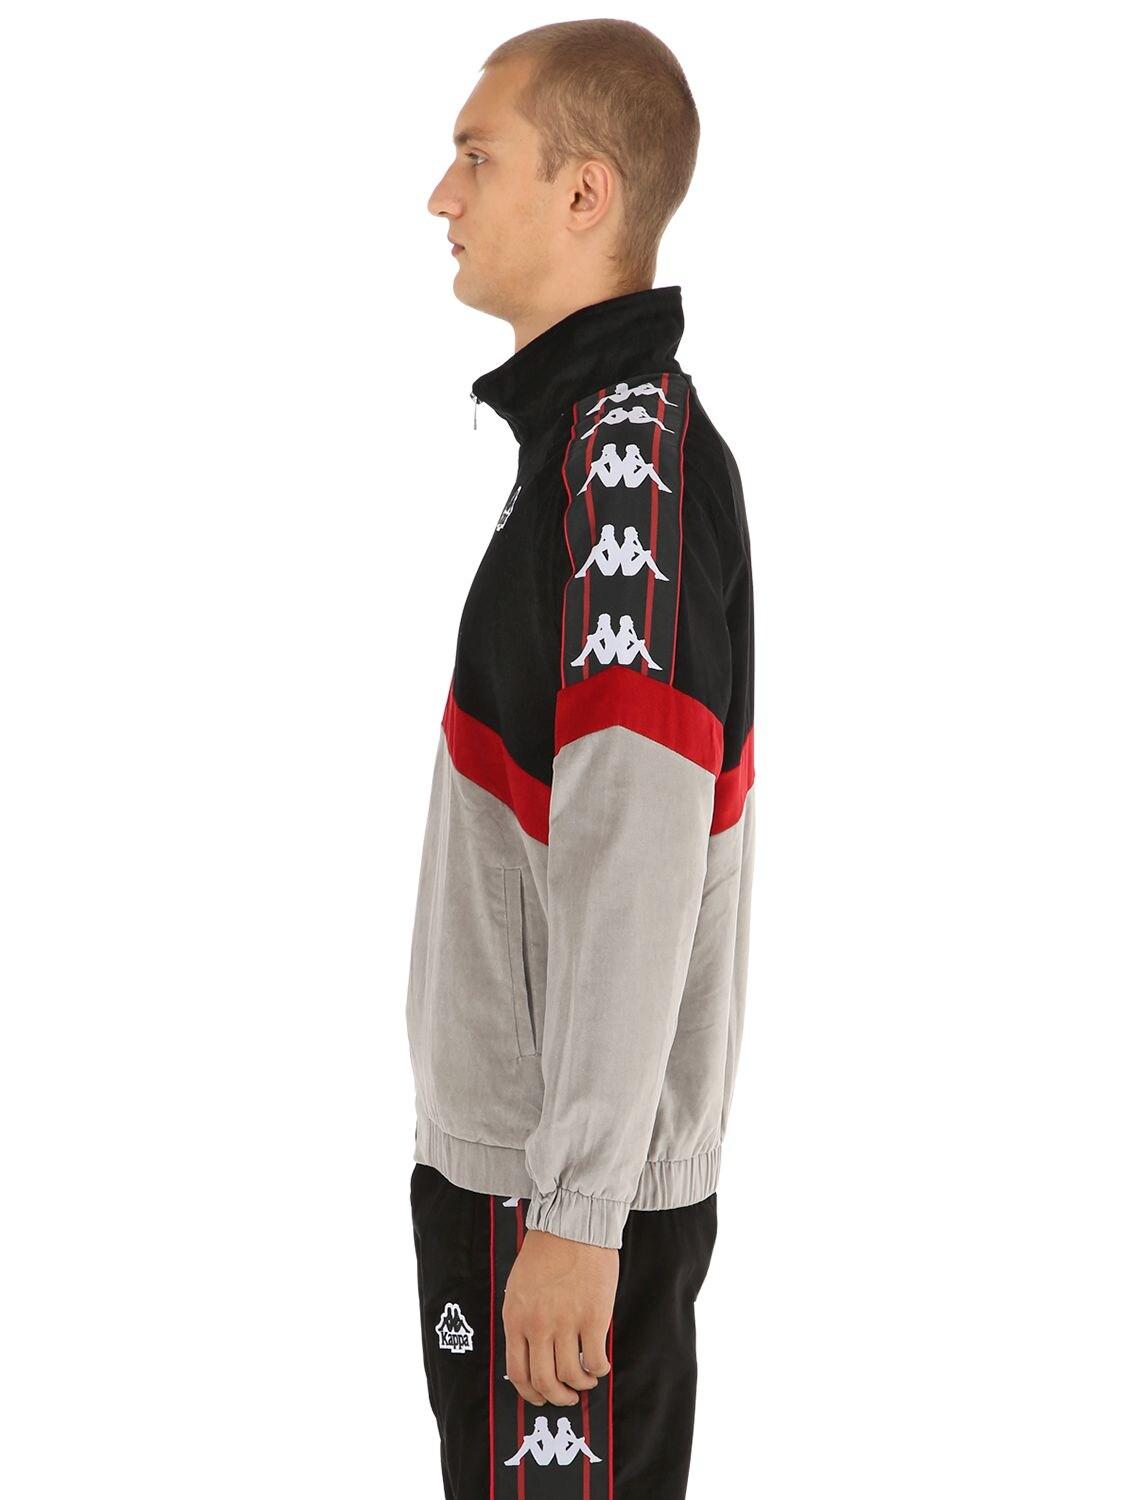 kappa authentic cabrini track jacket